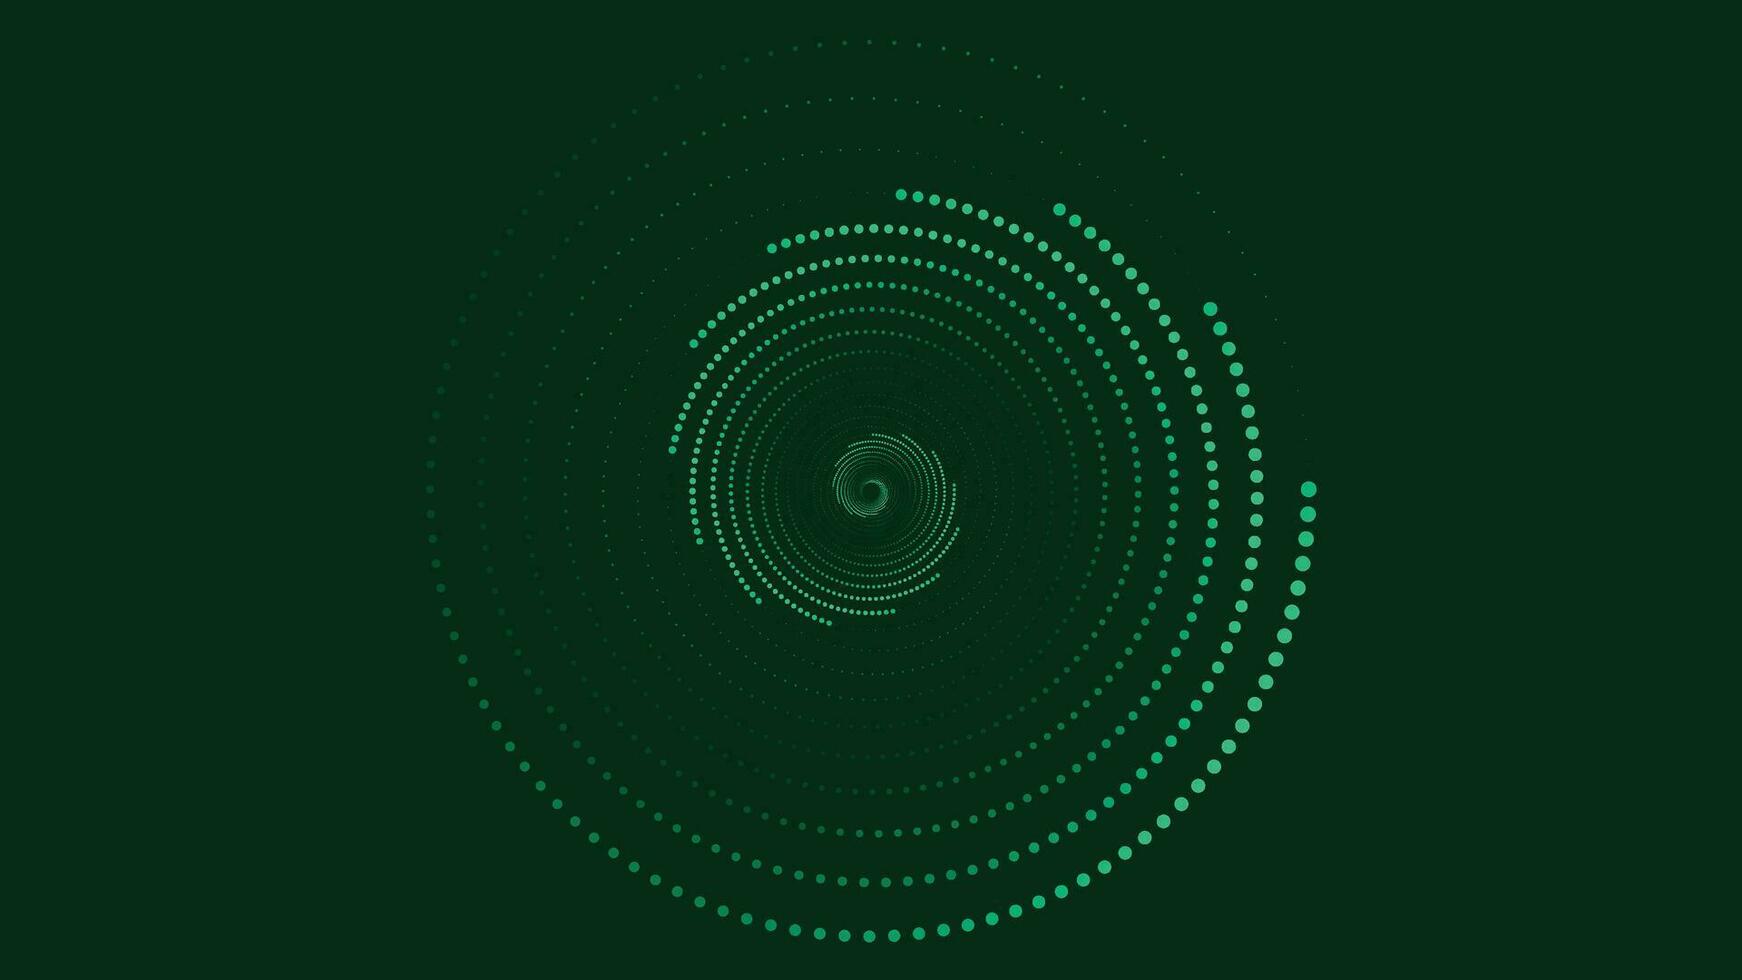 Abstarct vortex round spiral dotted background in dark green. vector